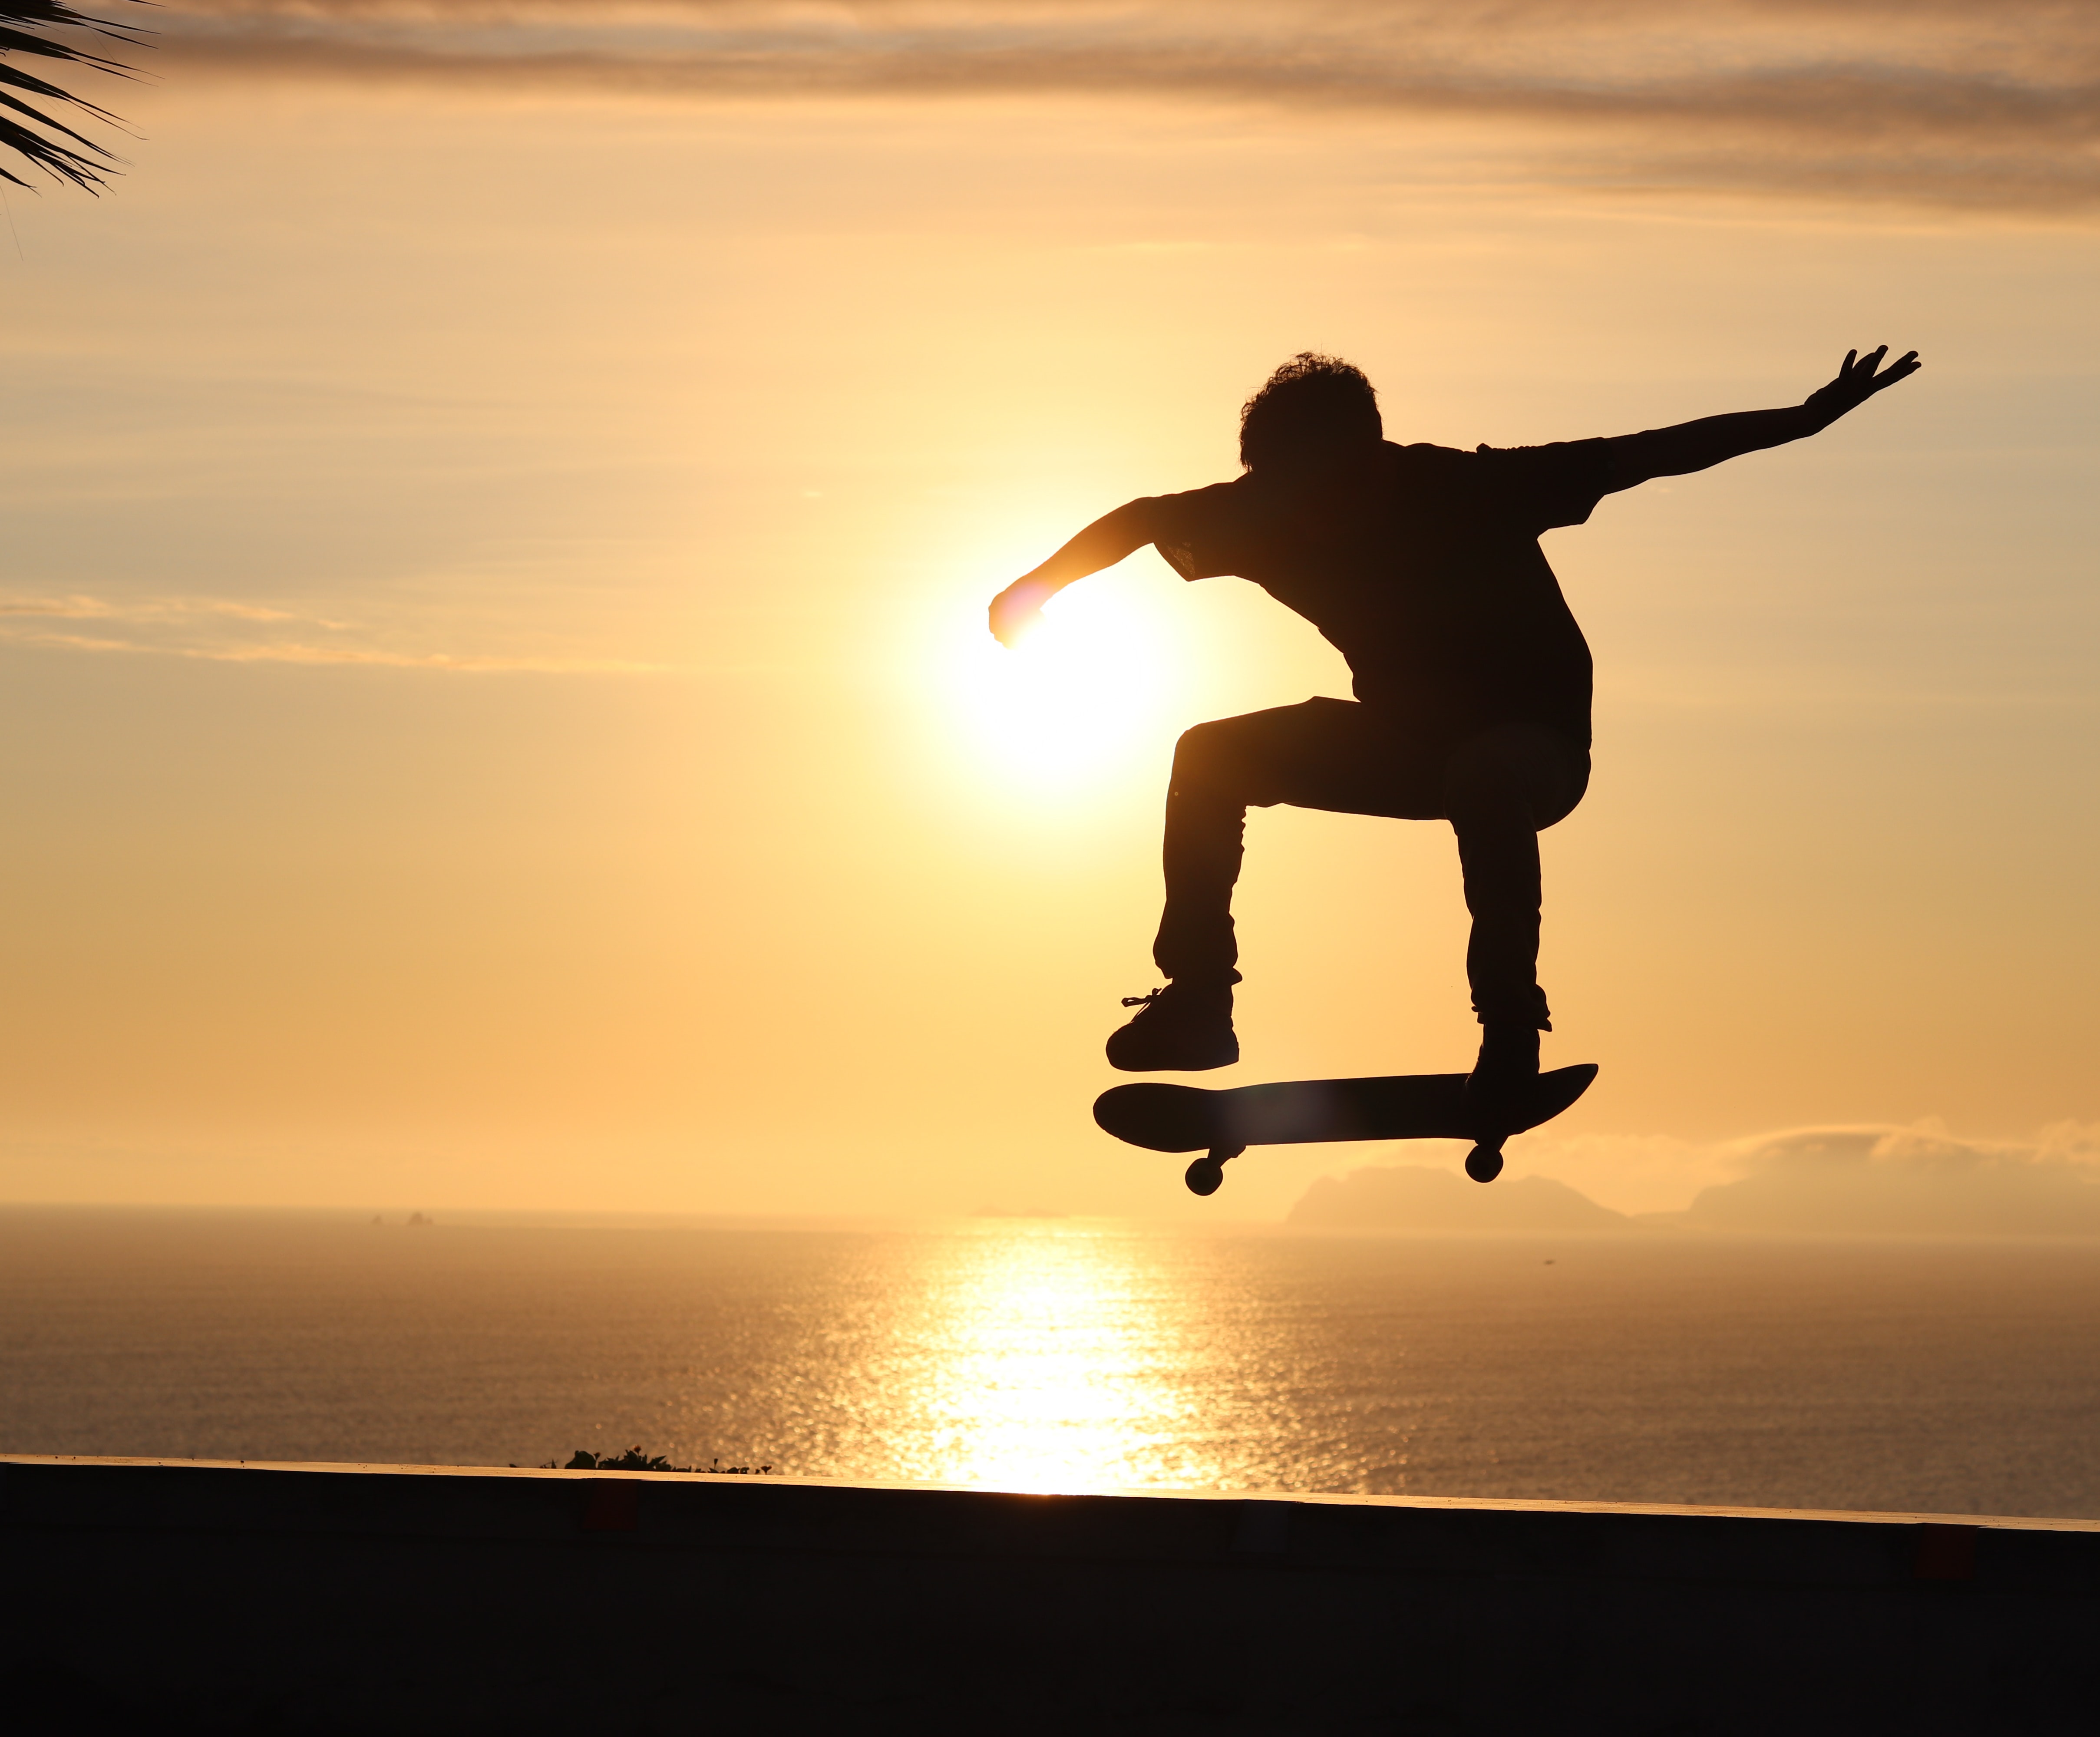 skateboard, sports, sunset, silhouette, trick, skate, skater